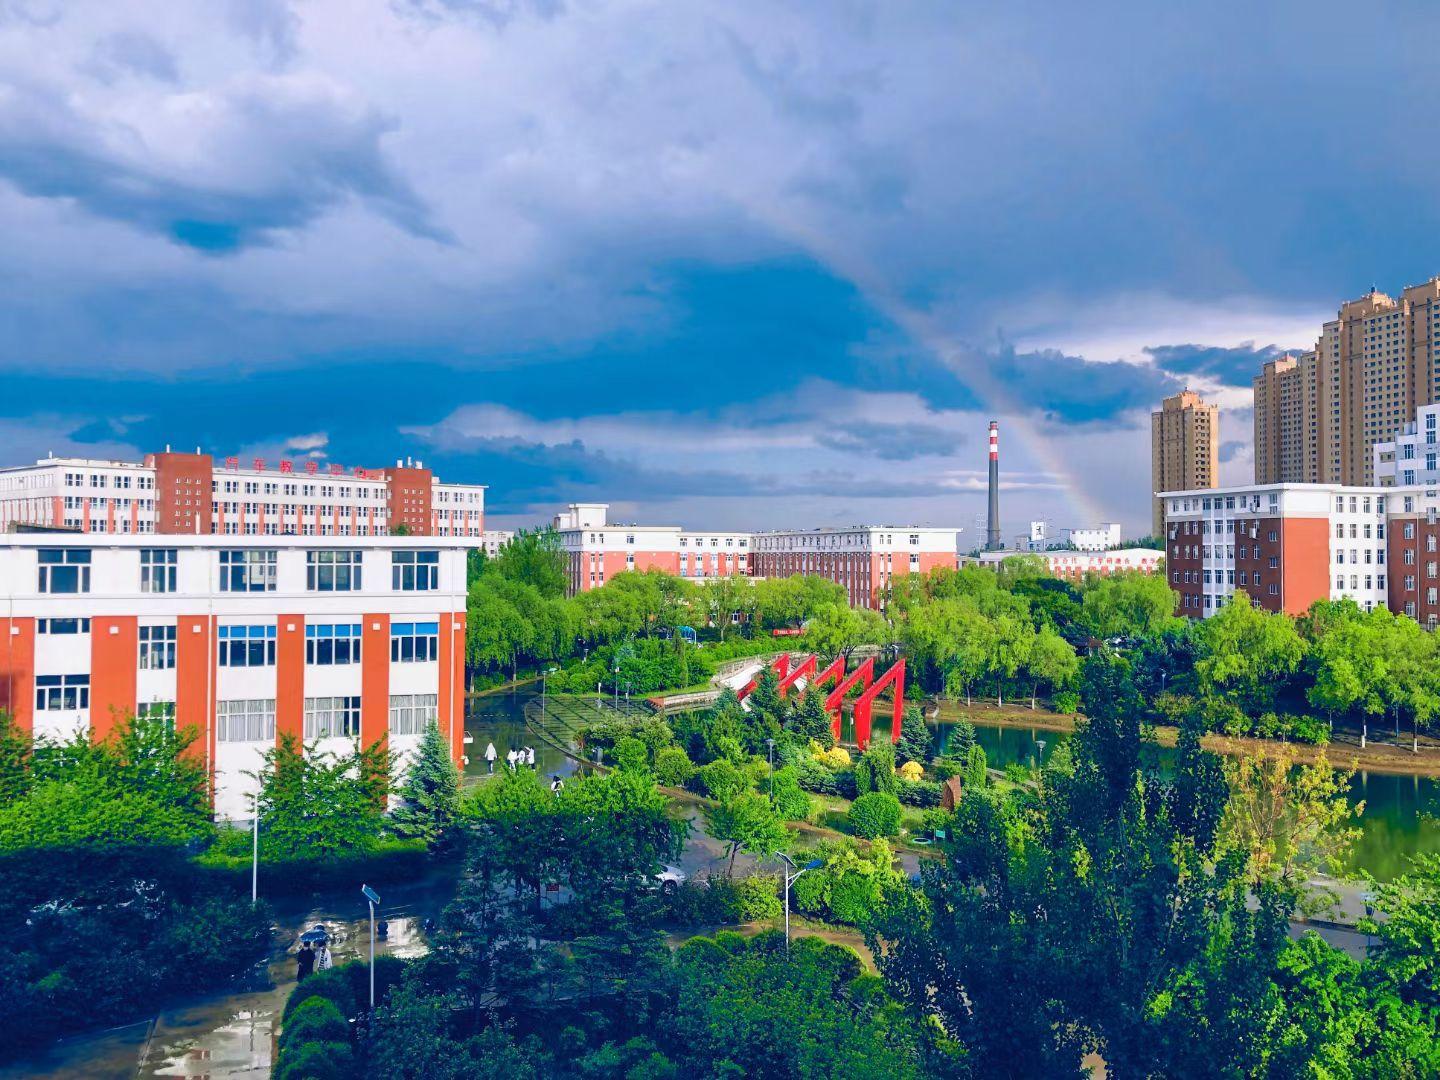 齐齐哈尔工程学院风景图片